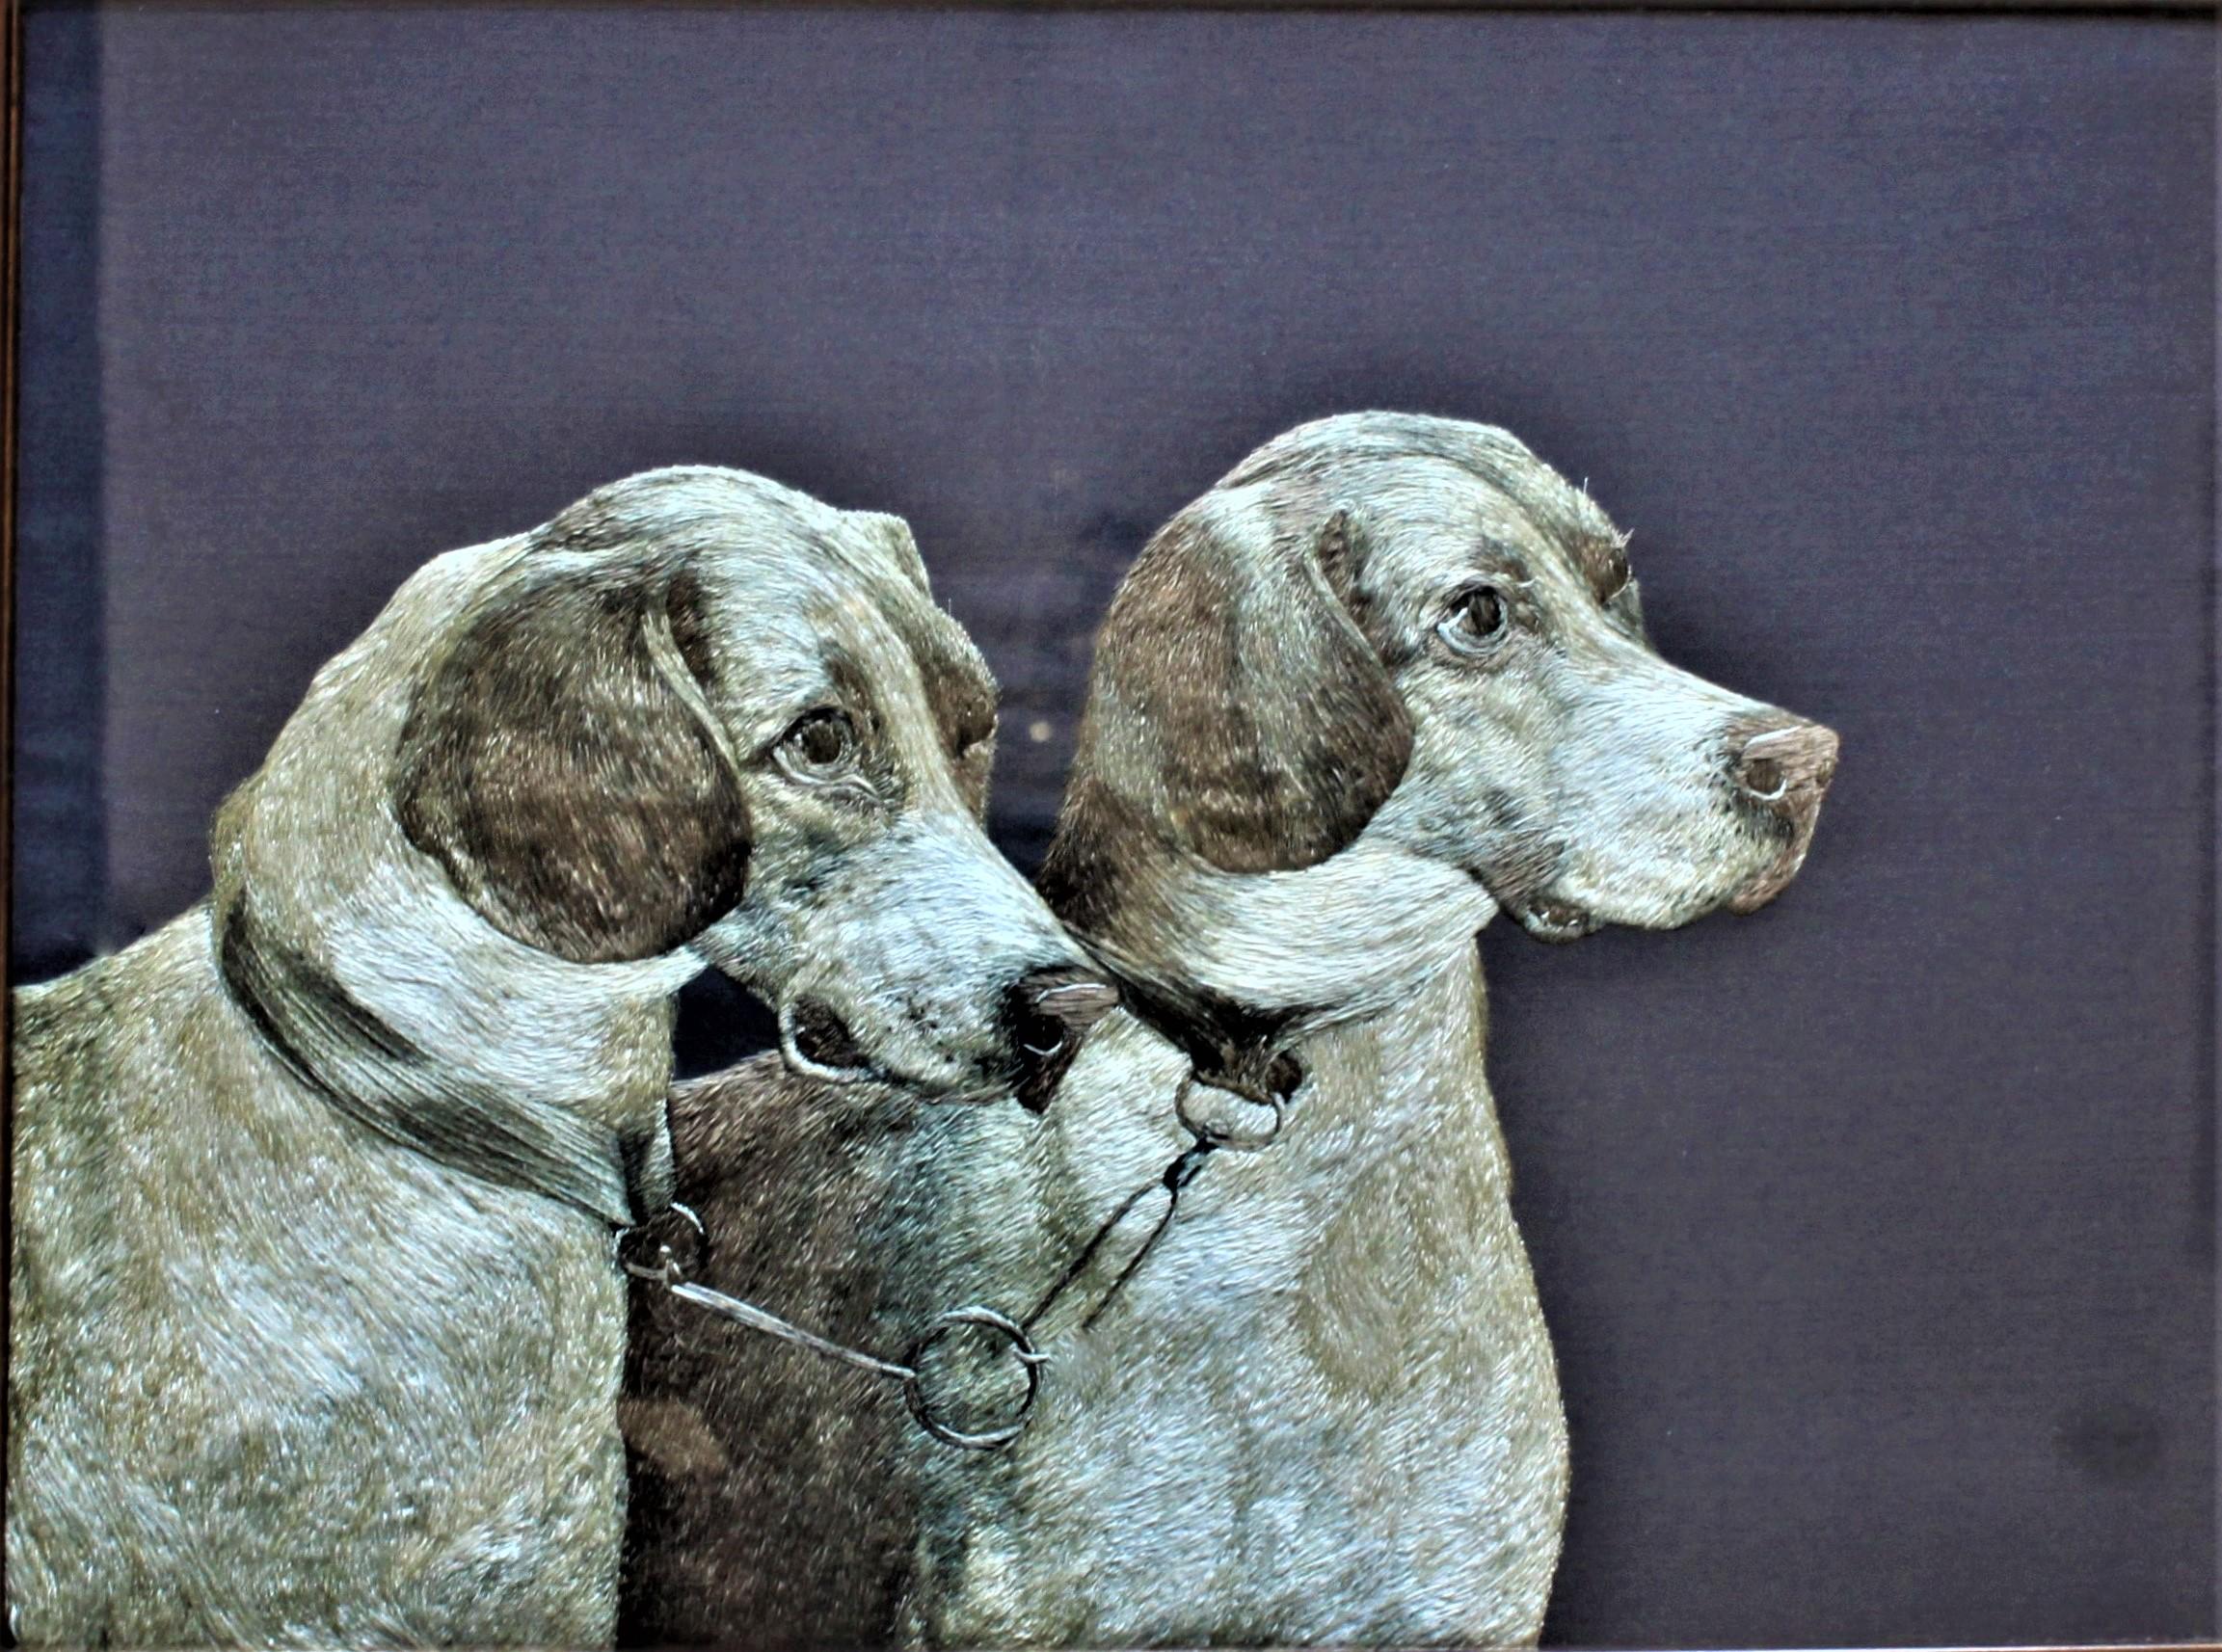 Présumée originaire des États-Unis et réalisée dans la période Arts & Crafts, cette représentation extrêmement complexe et réaliste de deux chiens courants bridés est entièrement réalisée en fil de soie de différentes couleurs. Les visages et les